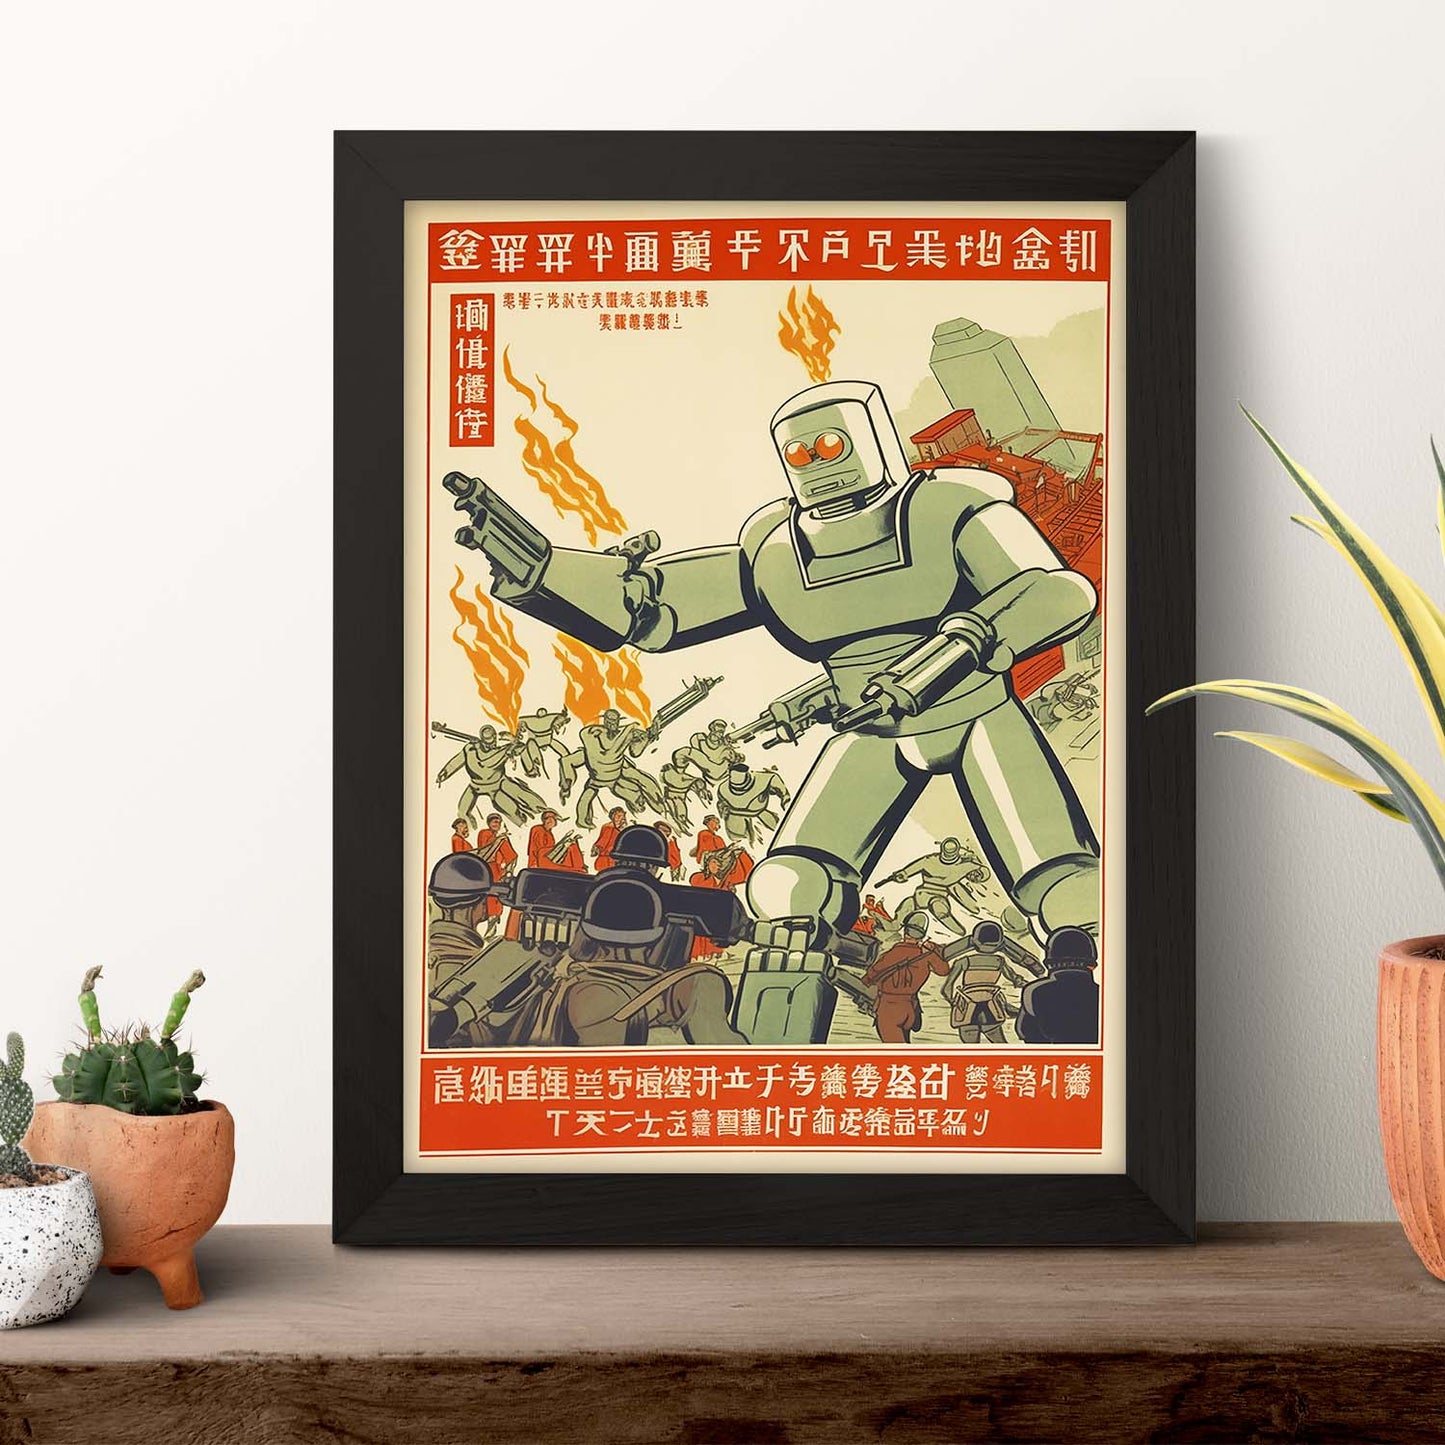 Poster Revolución Cultural China del T